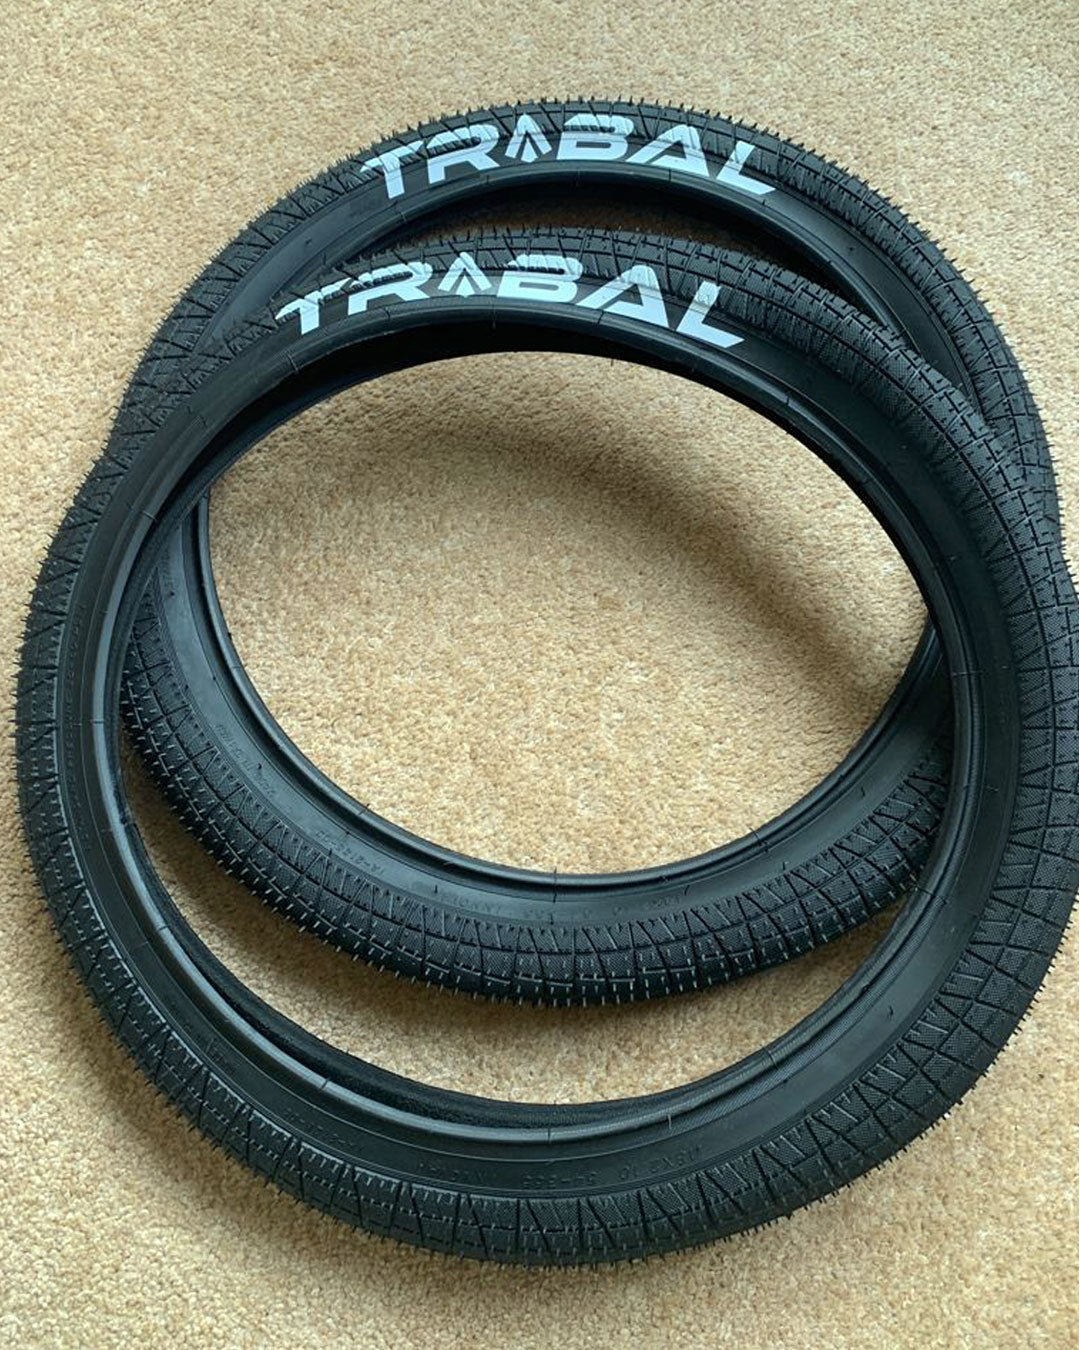 Tribal 18" BMX Tyre 2.1